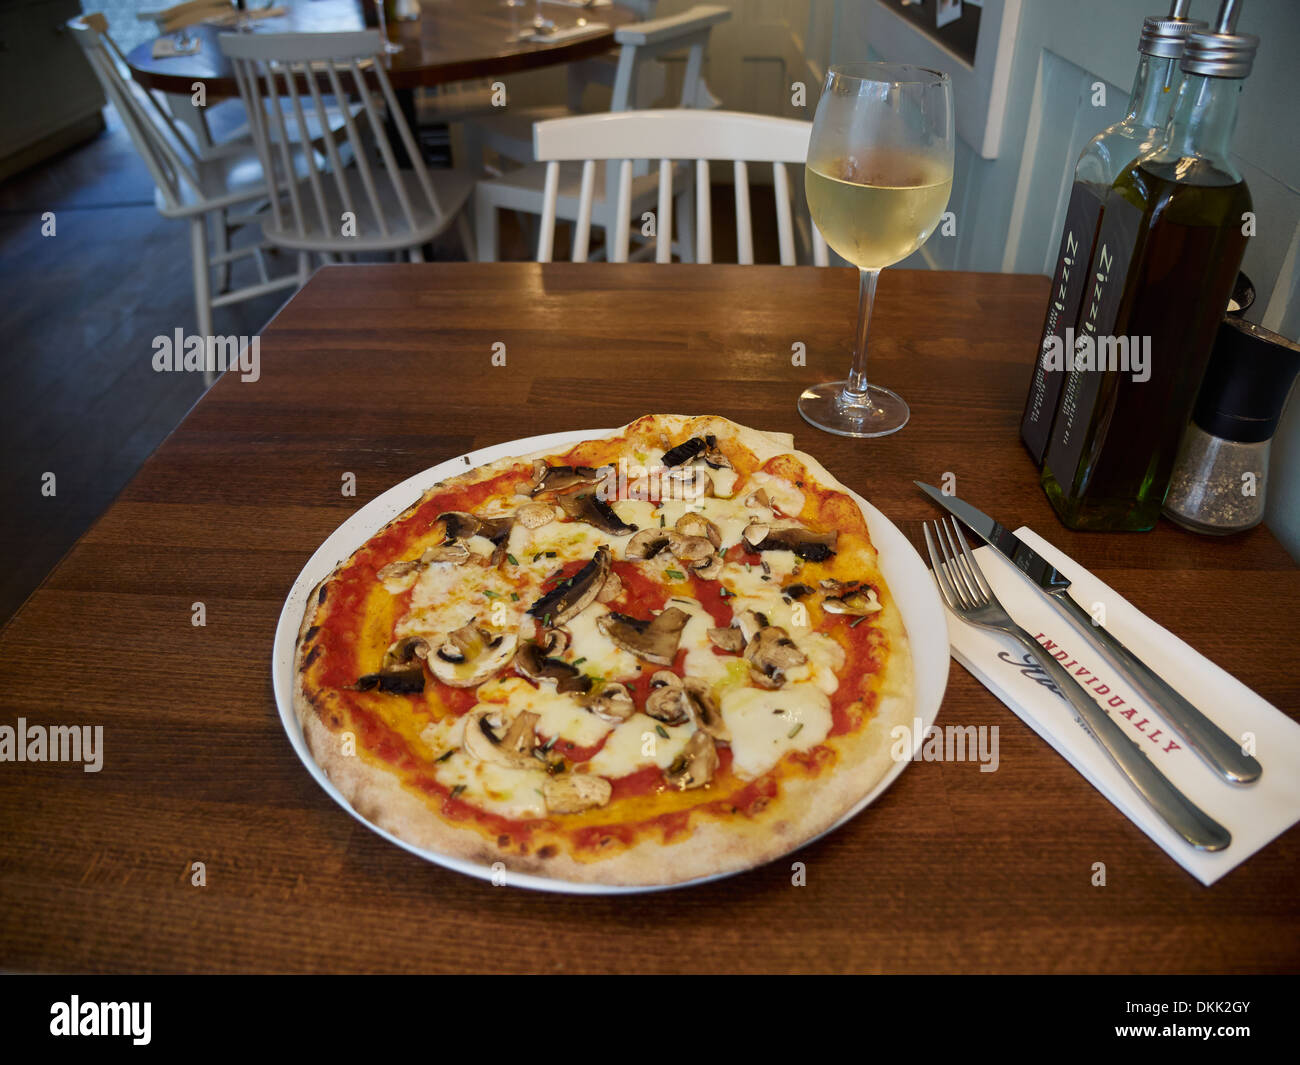 Pizza de setas con aceite de oliva fresco y un vaso de vino blanco Foto de stock